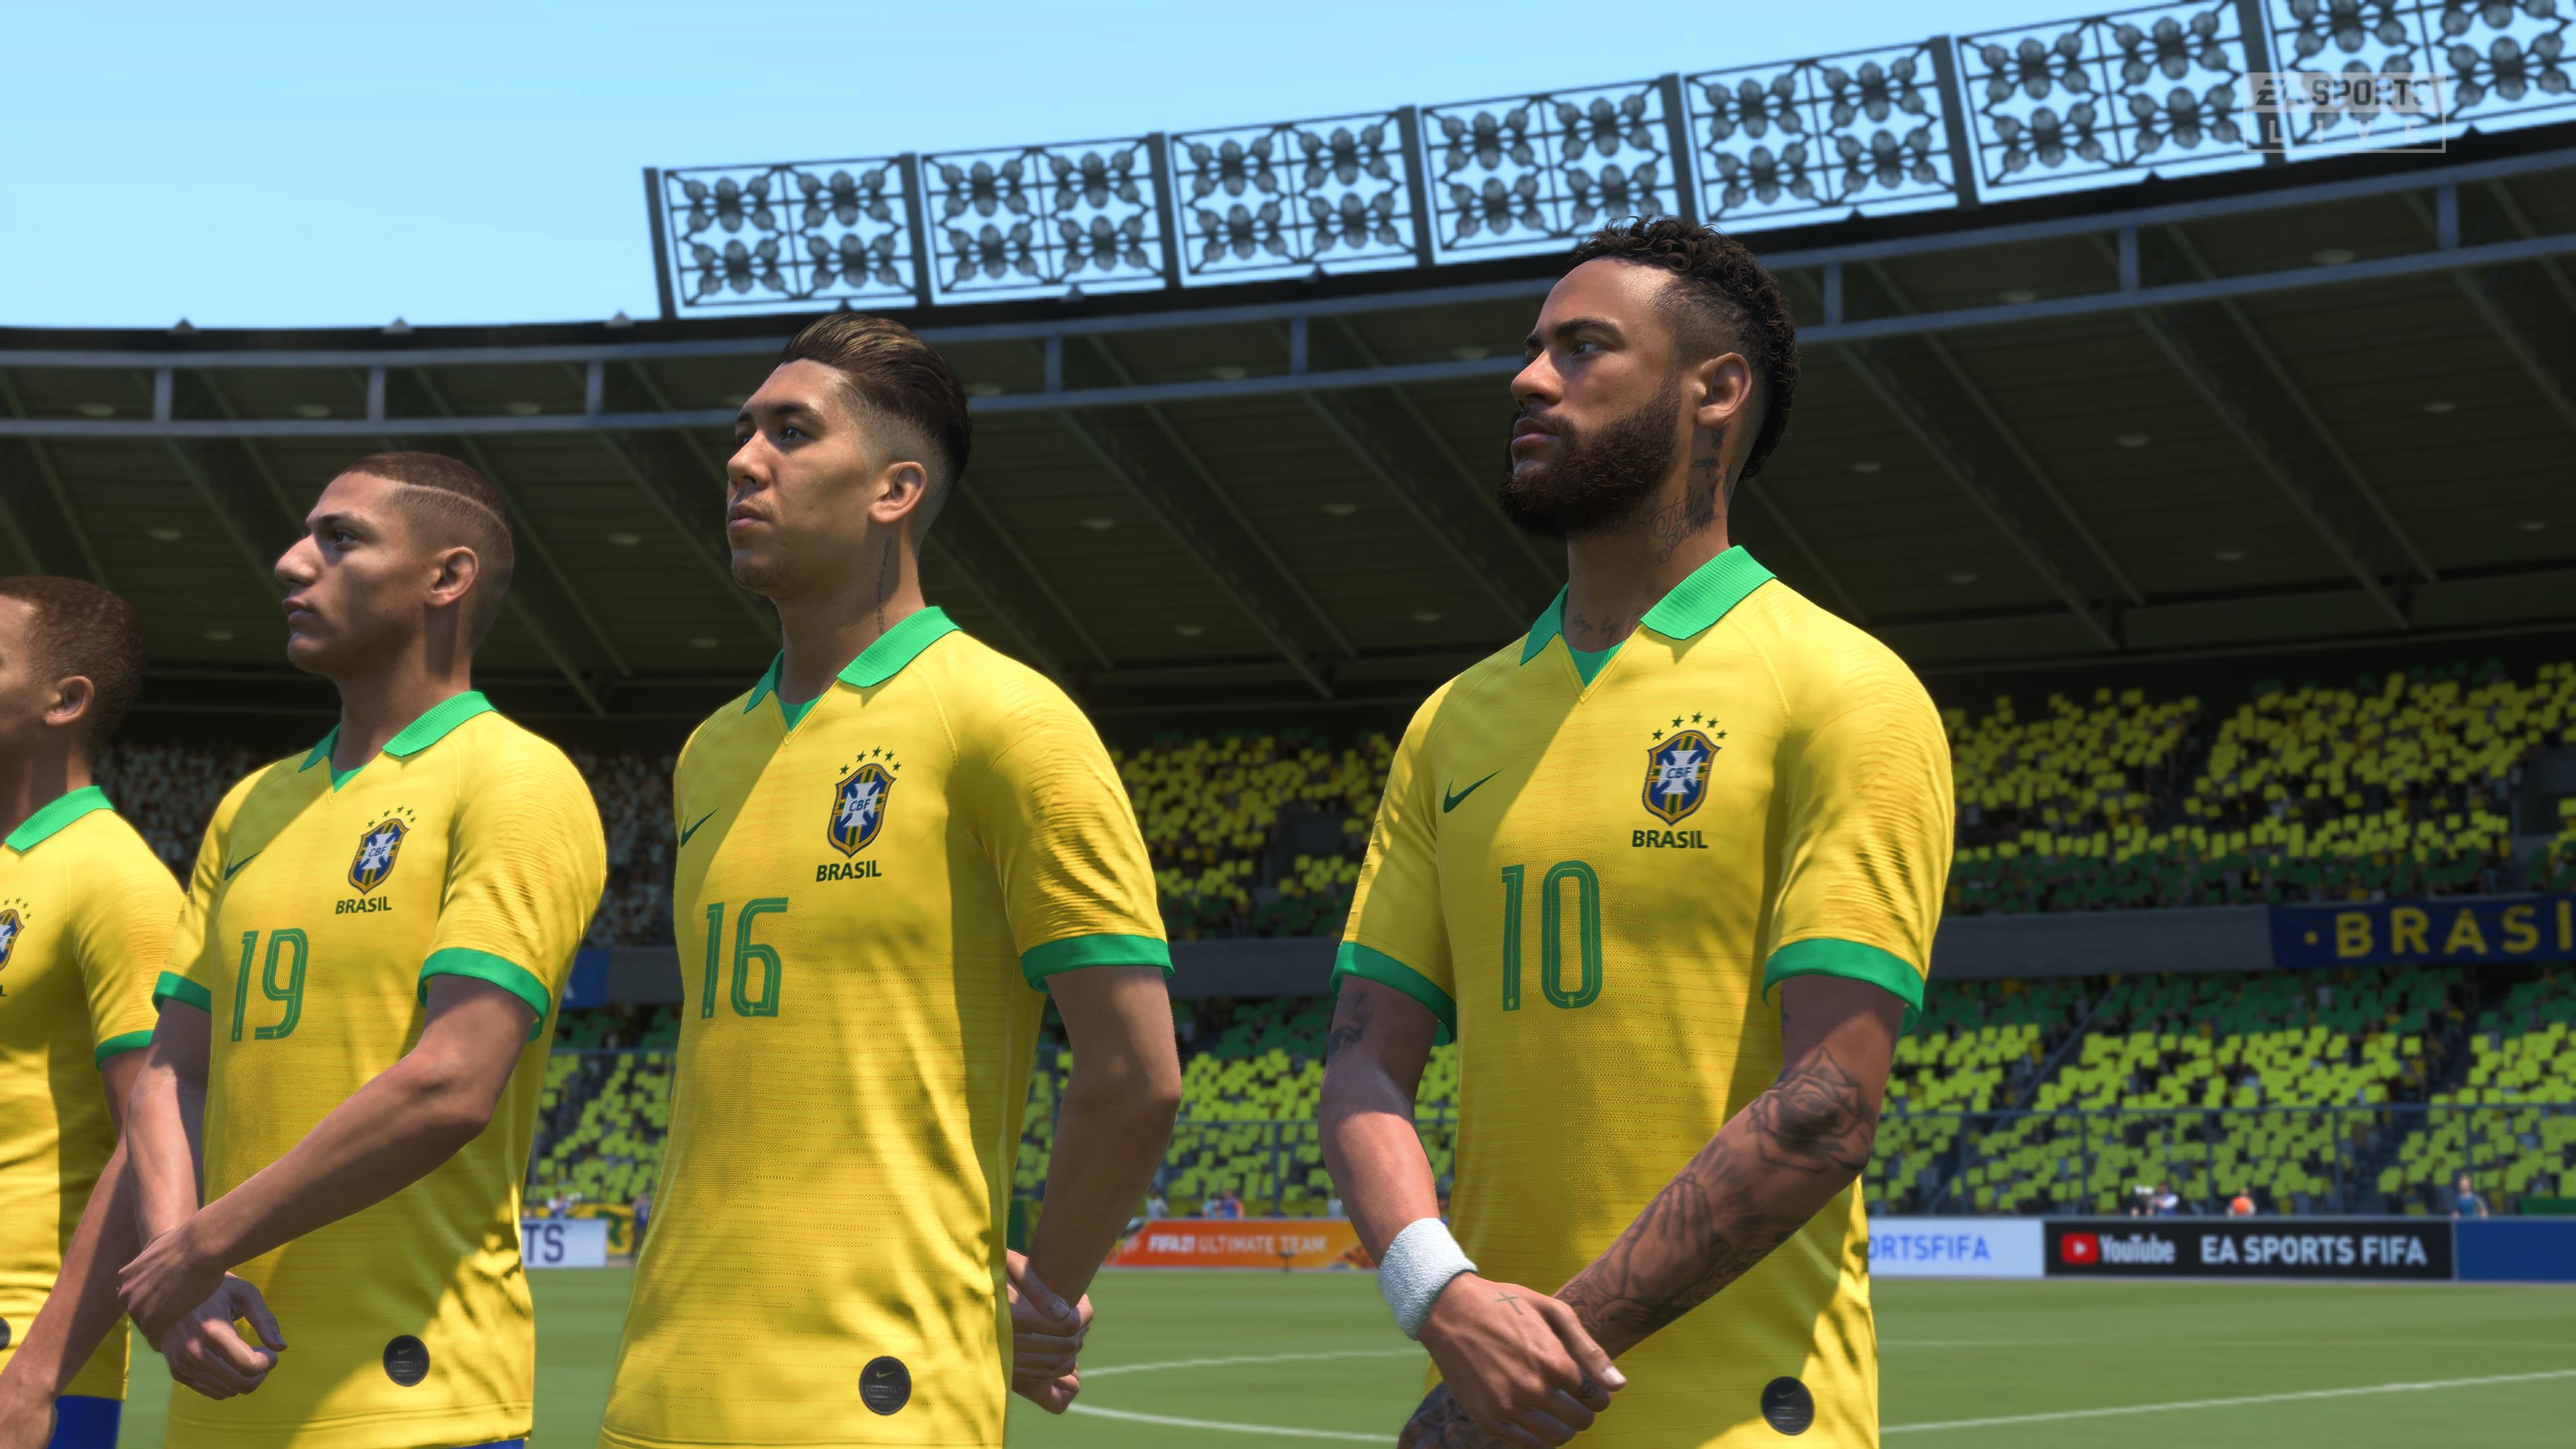 Modo Copa do 'FIFA 18' tem uma escalação meio zoada pra Seleção